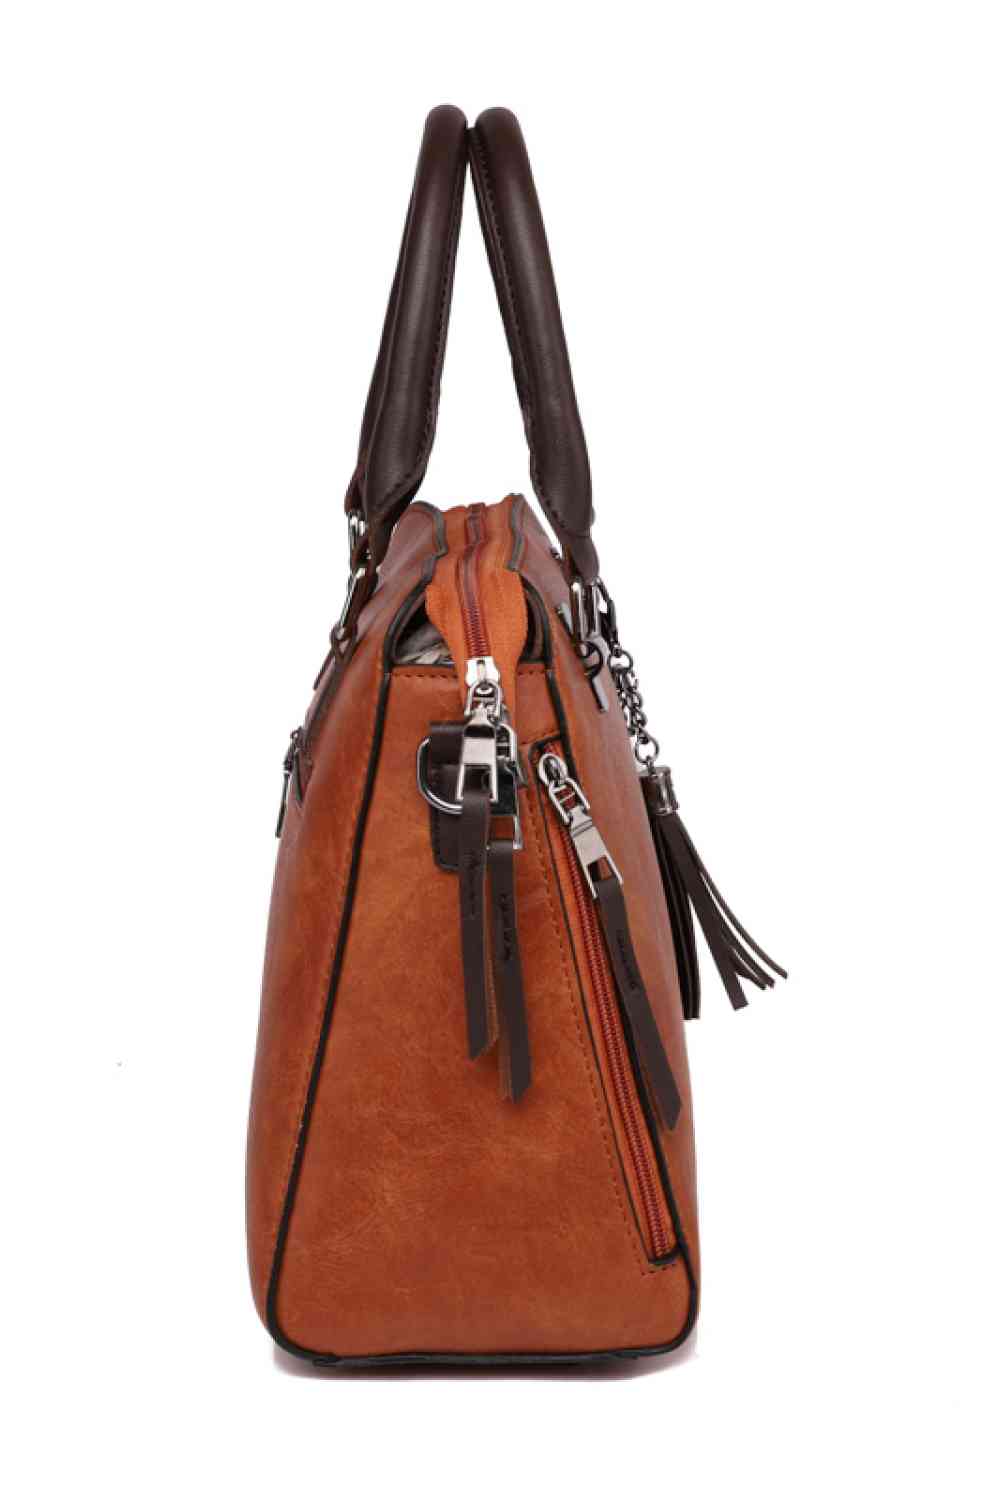 PU Leather Bag Set - BloomBliss.com